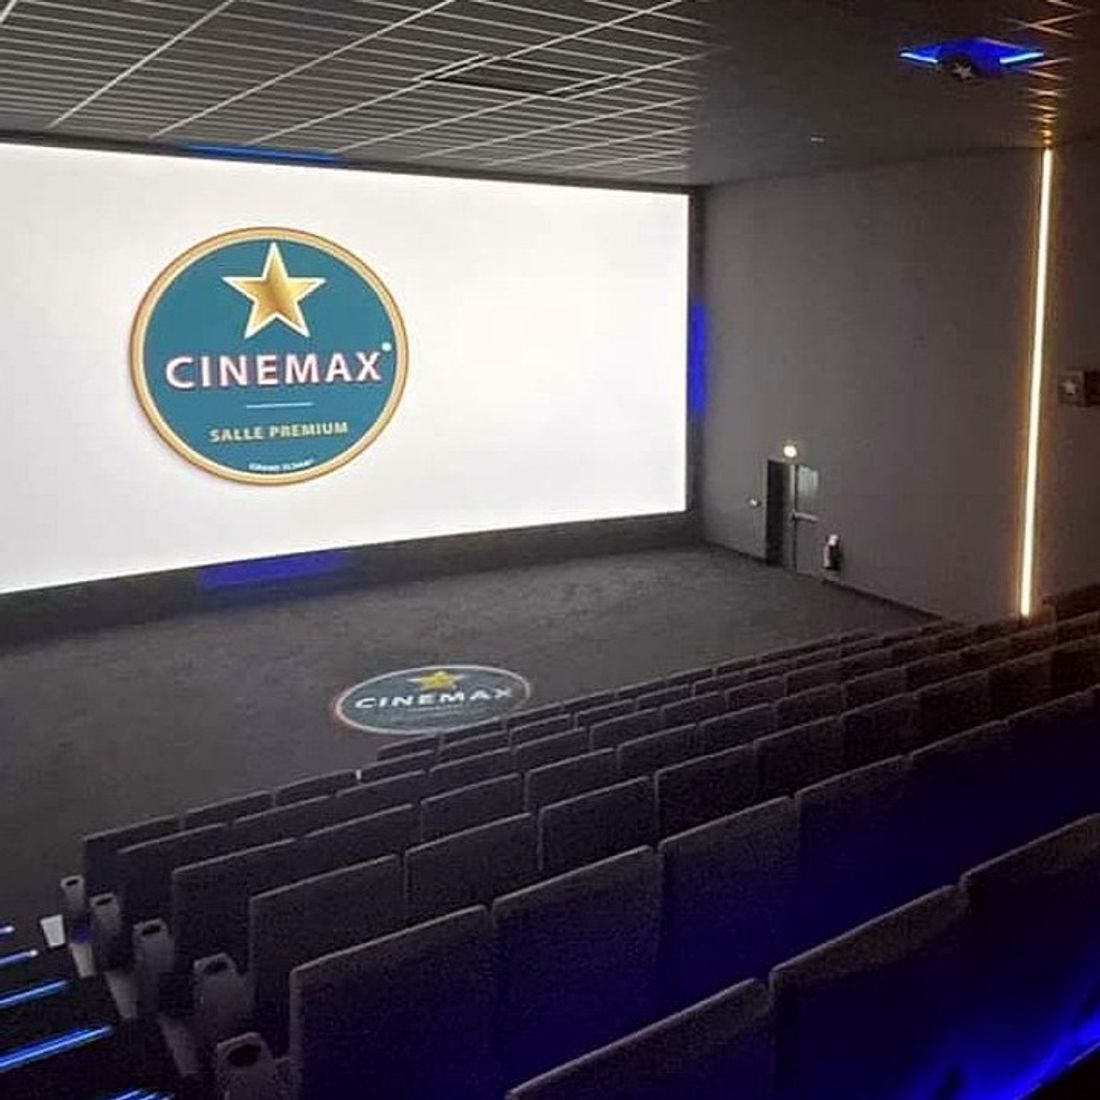 Cinéma : Ouverture d'une salle Cinemax à Limoges